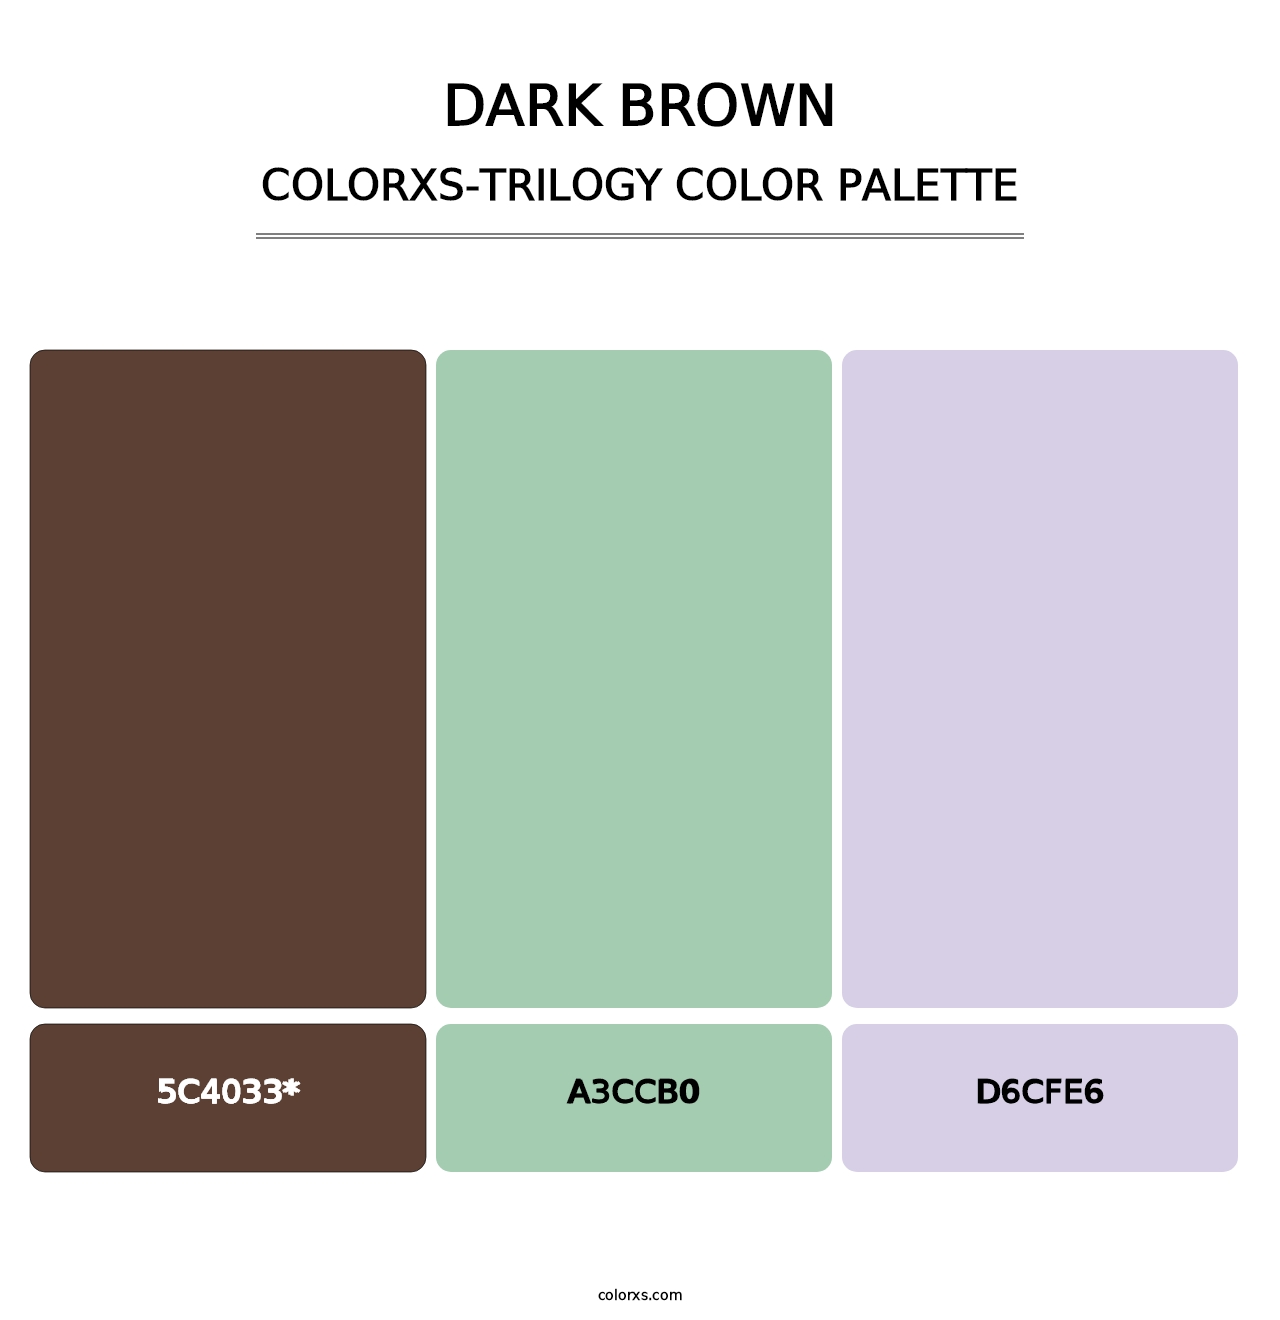 Dark Brown - Colorxs Trilogy Palette